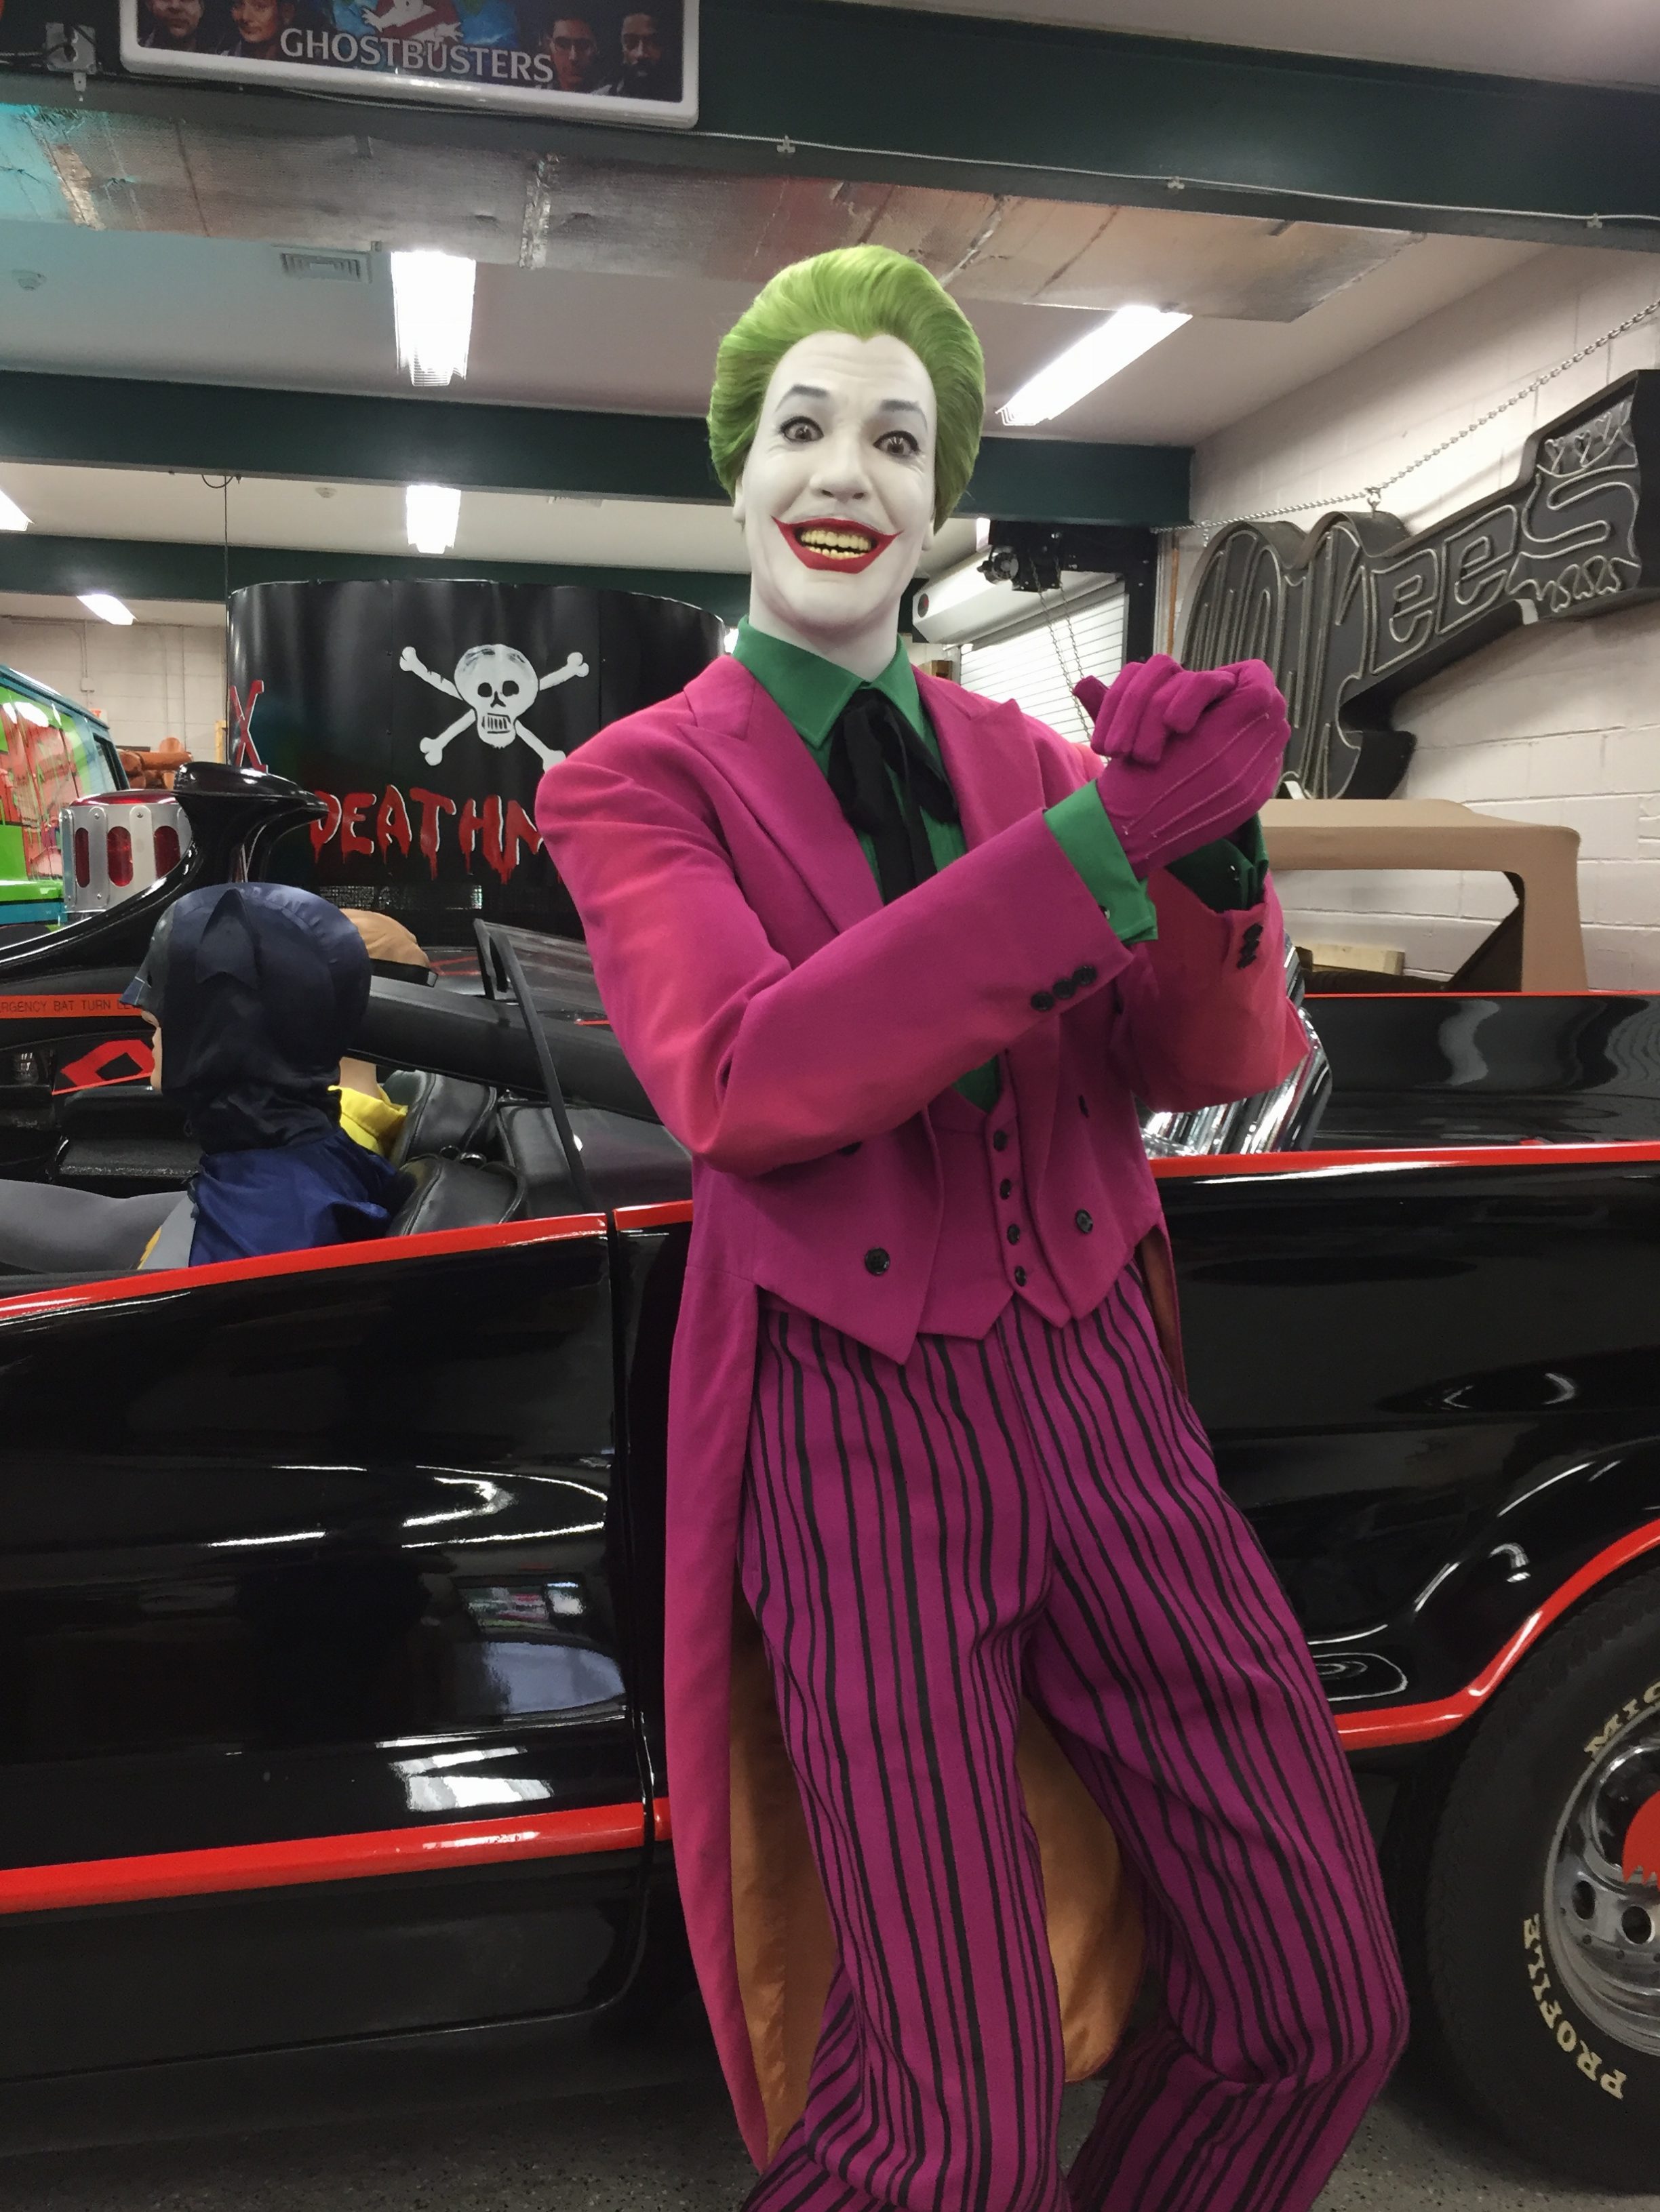 Batman TV Show #JOKER Hashtag The Joker Licensed Dickies Work Shirt All Sizes